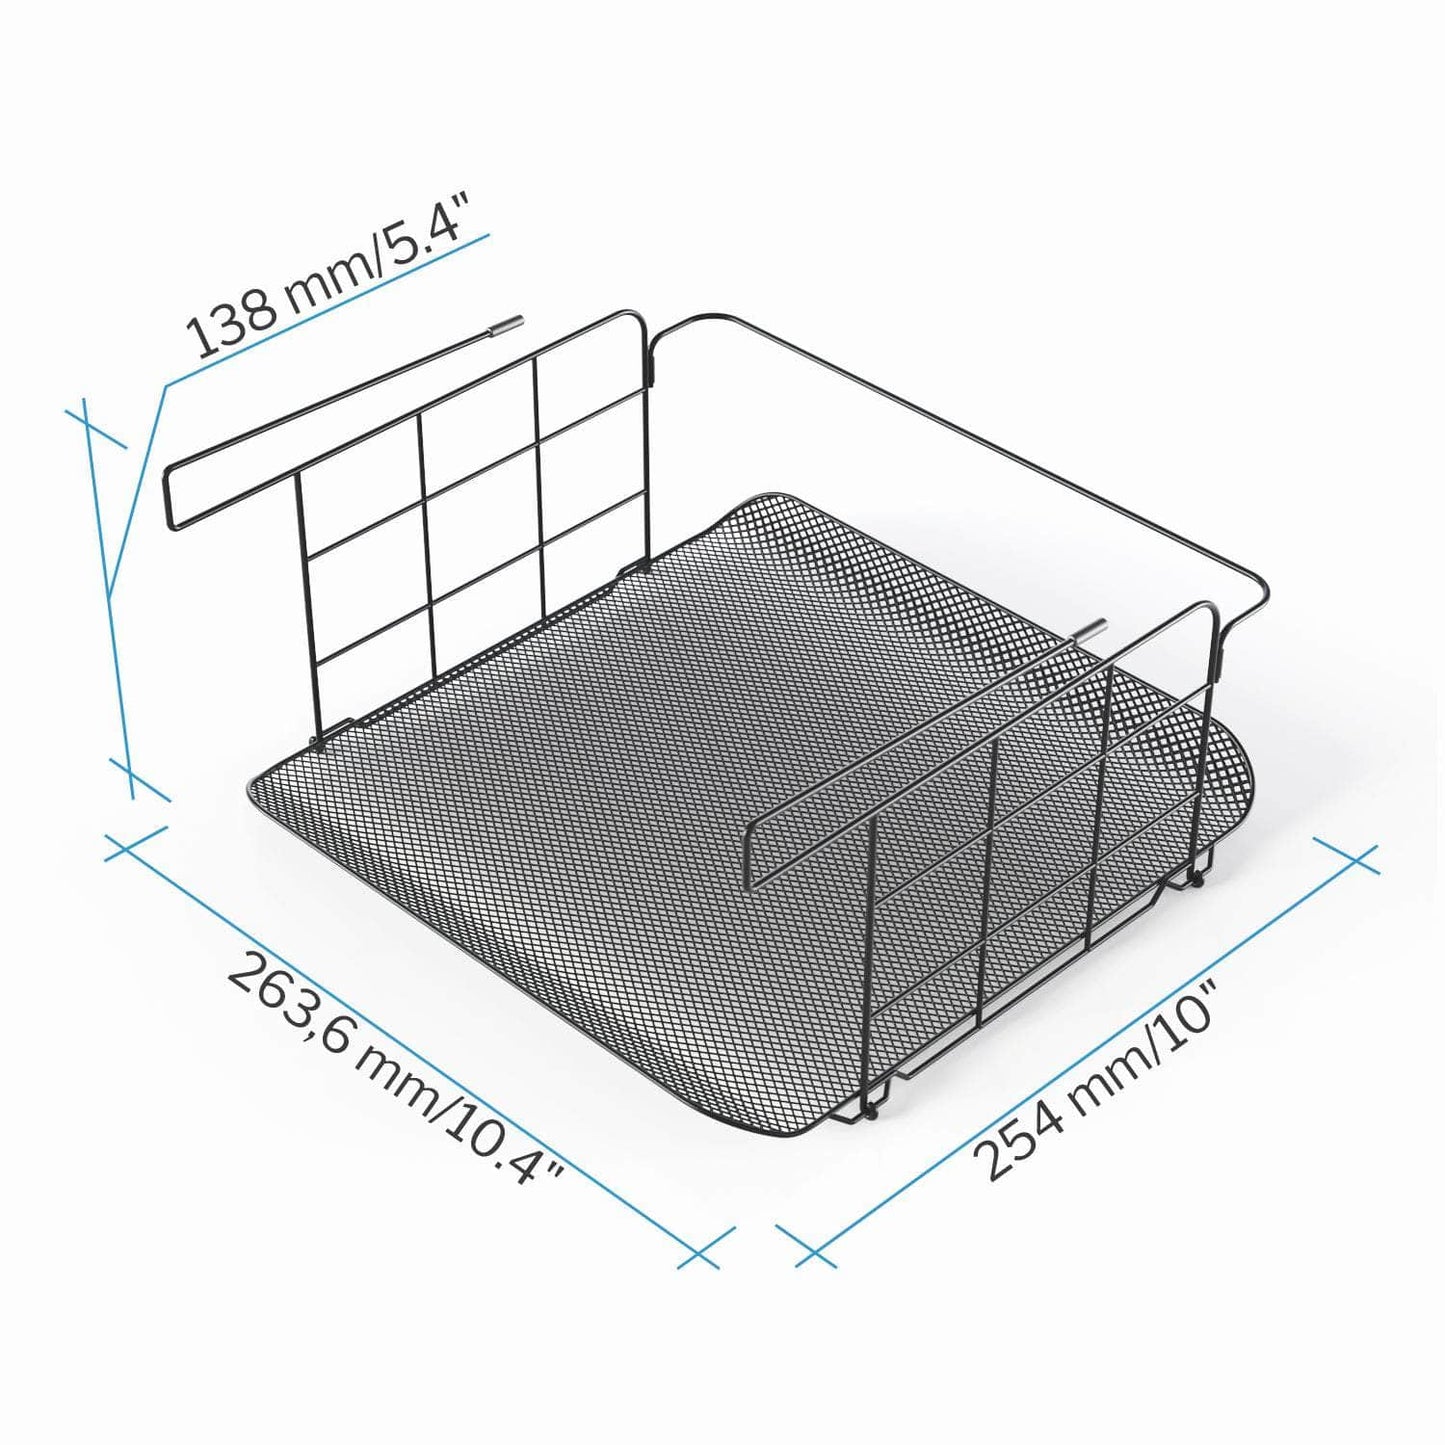 KD Essentials – 2× under-shelf storage baskets, set of two, mesh design